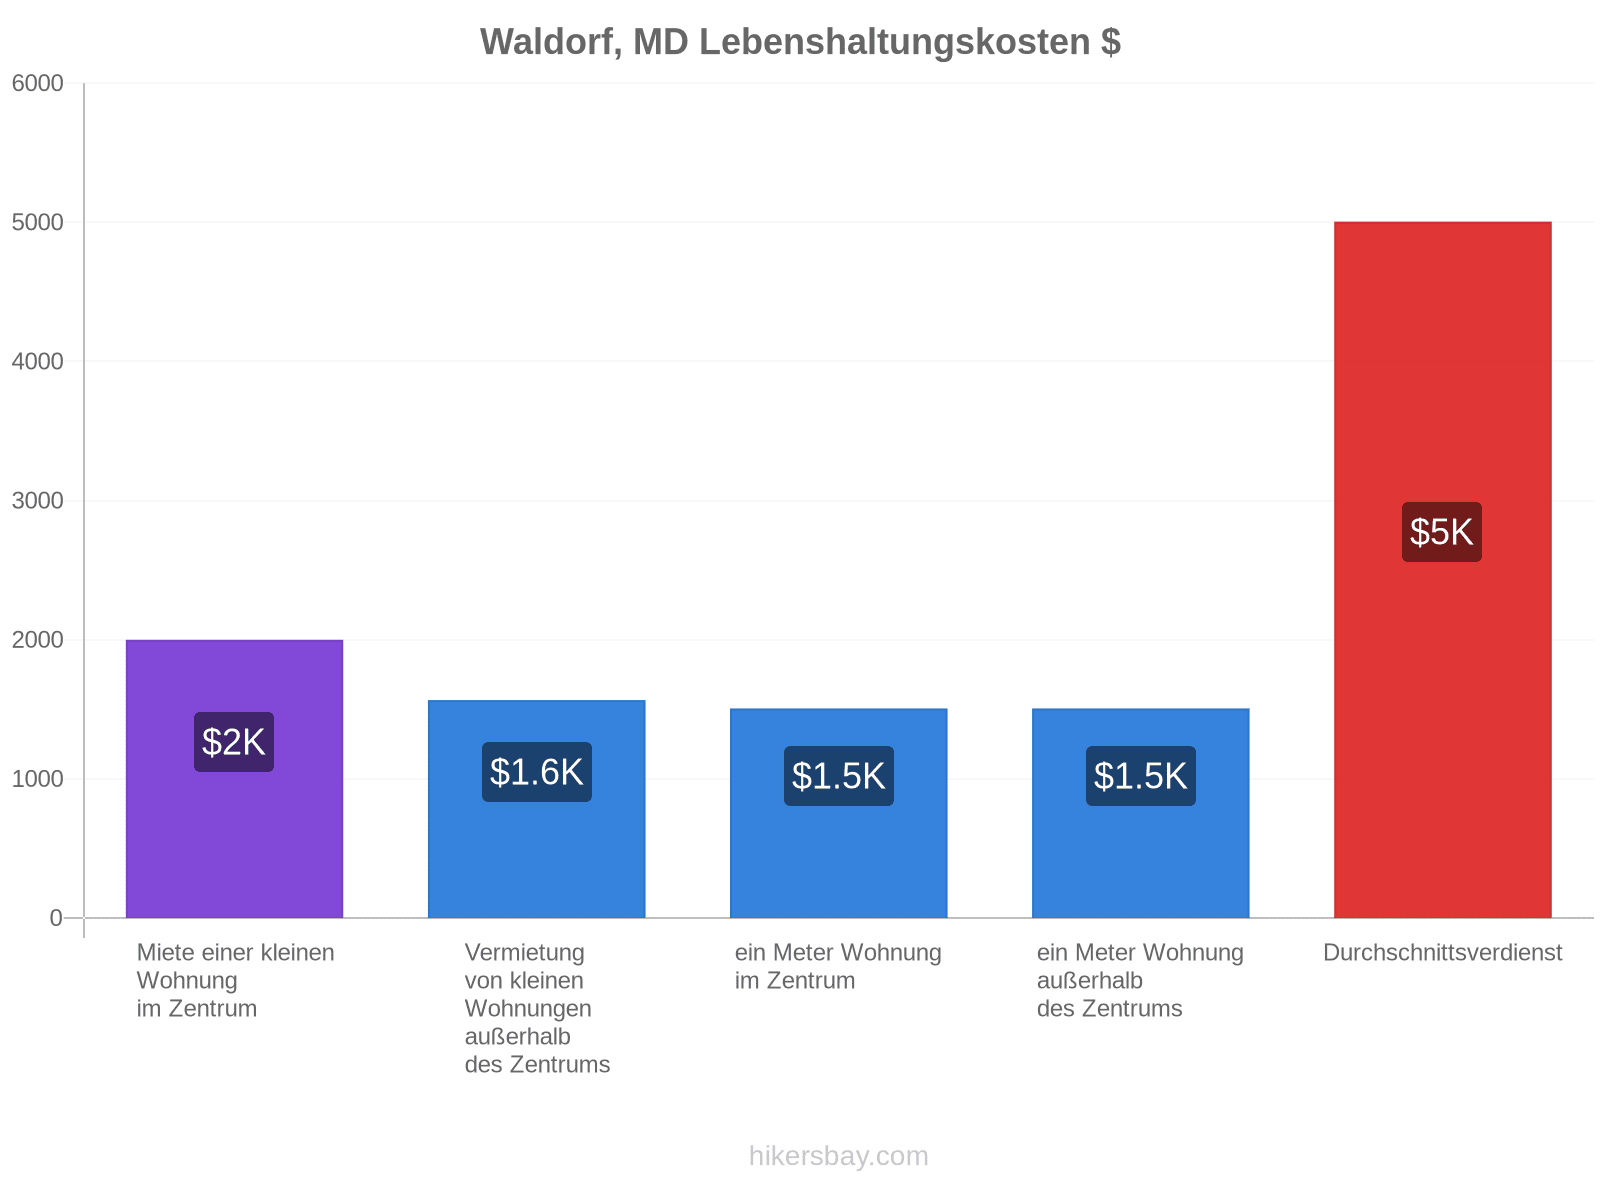 Waldorf, MD Lebenshaltungskosten hikersbay.com